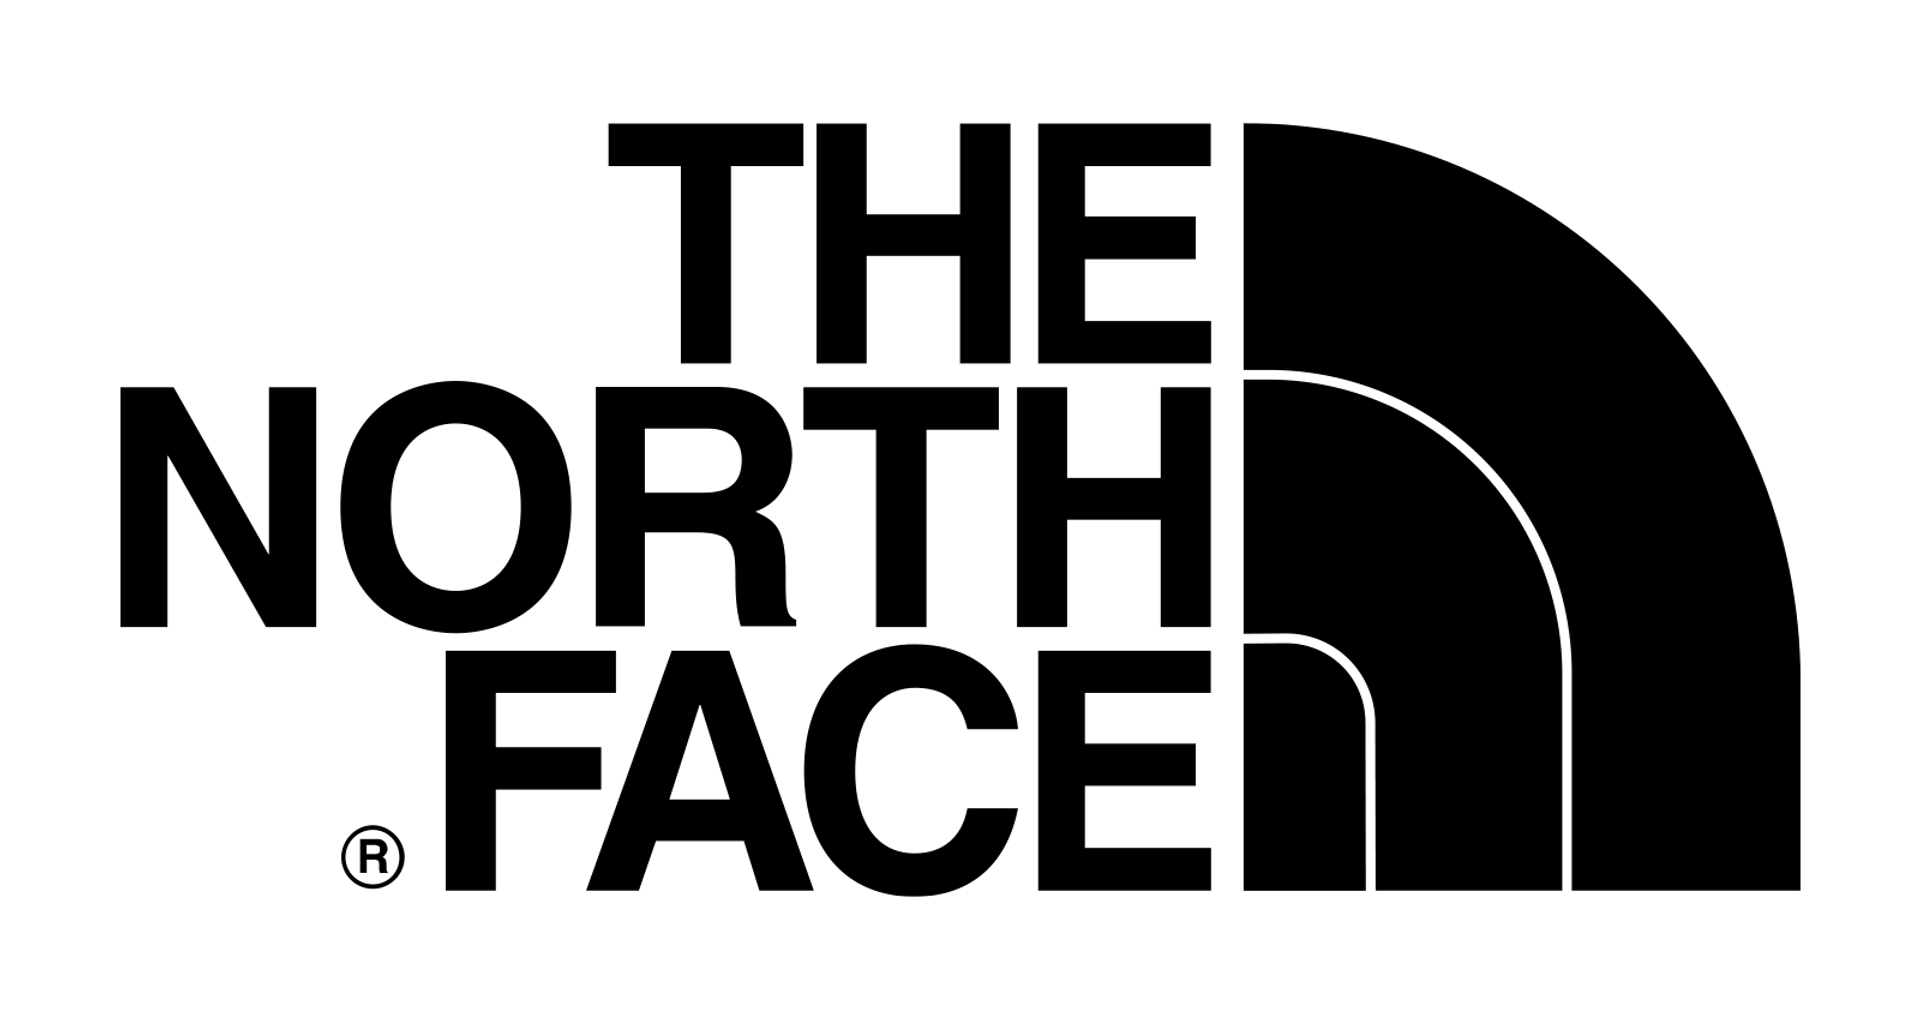 THE NORTH FACE logo die aktuell Flugblatt